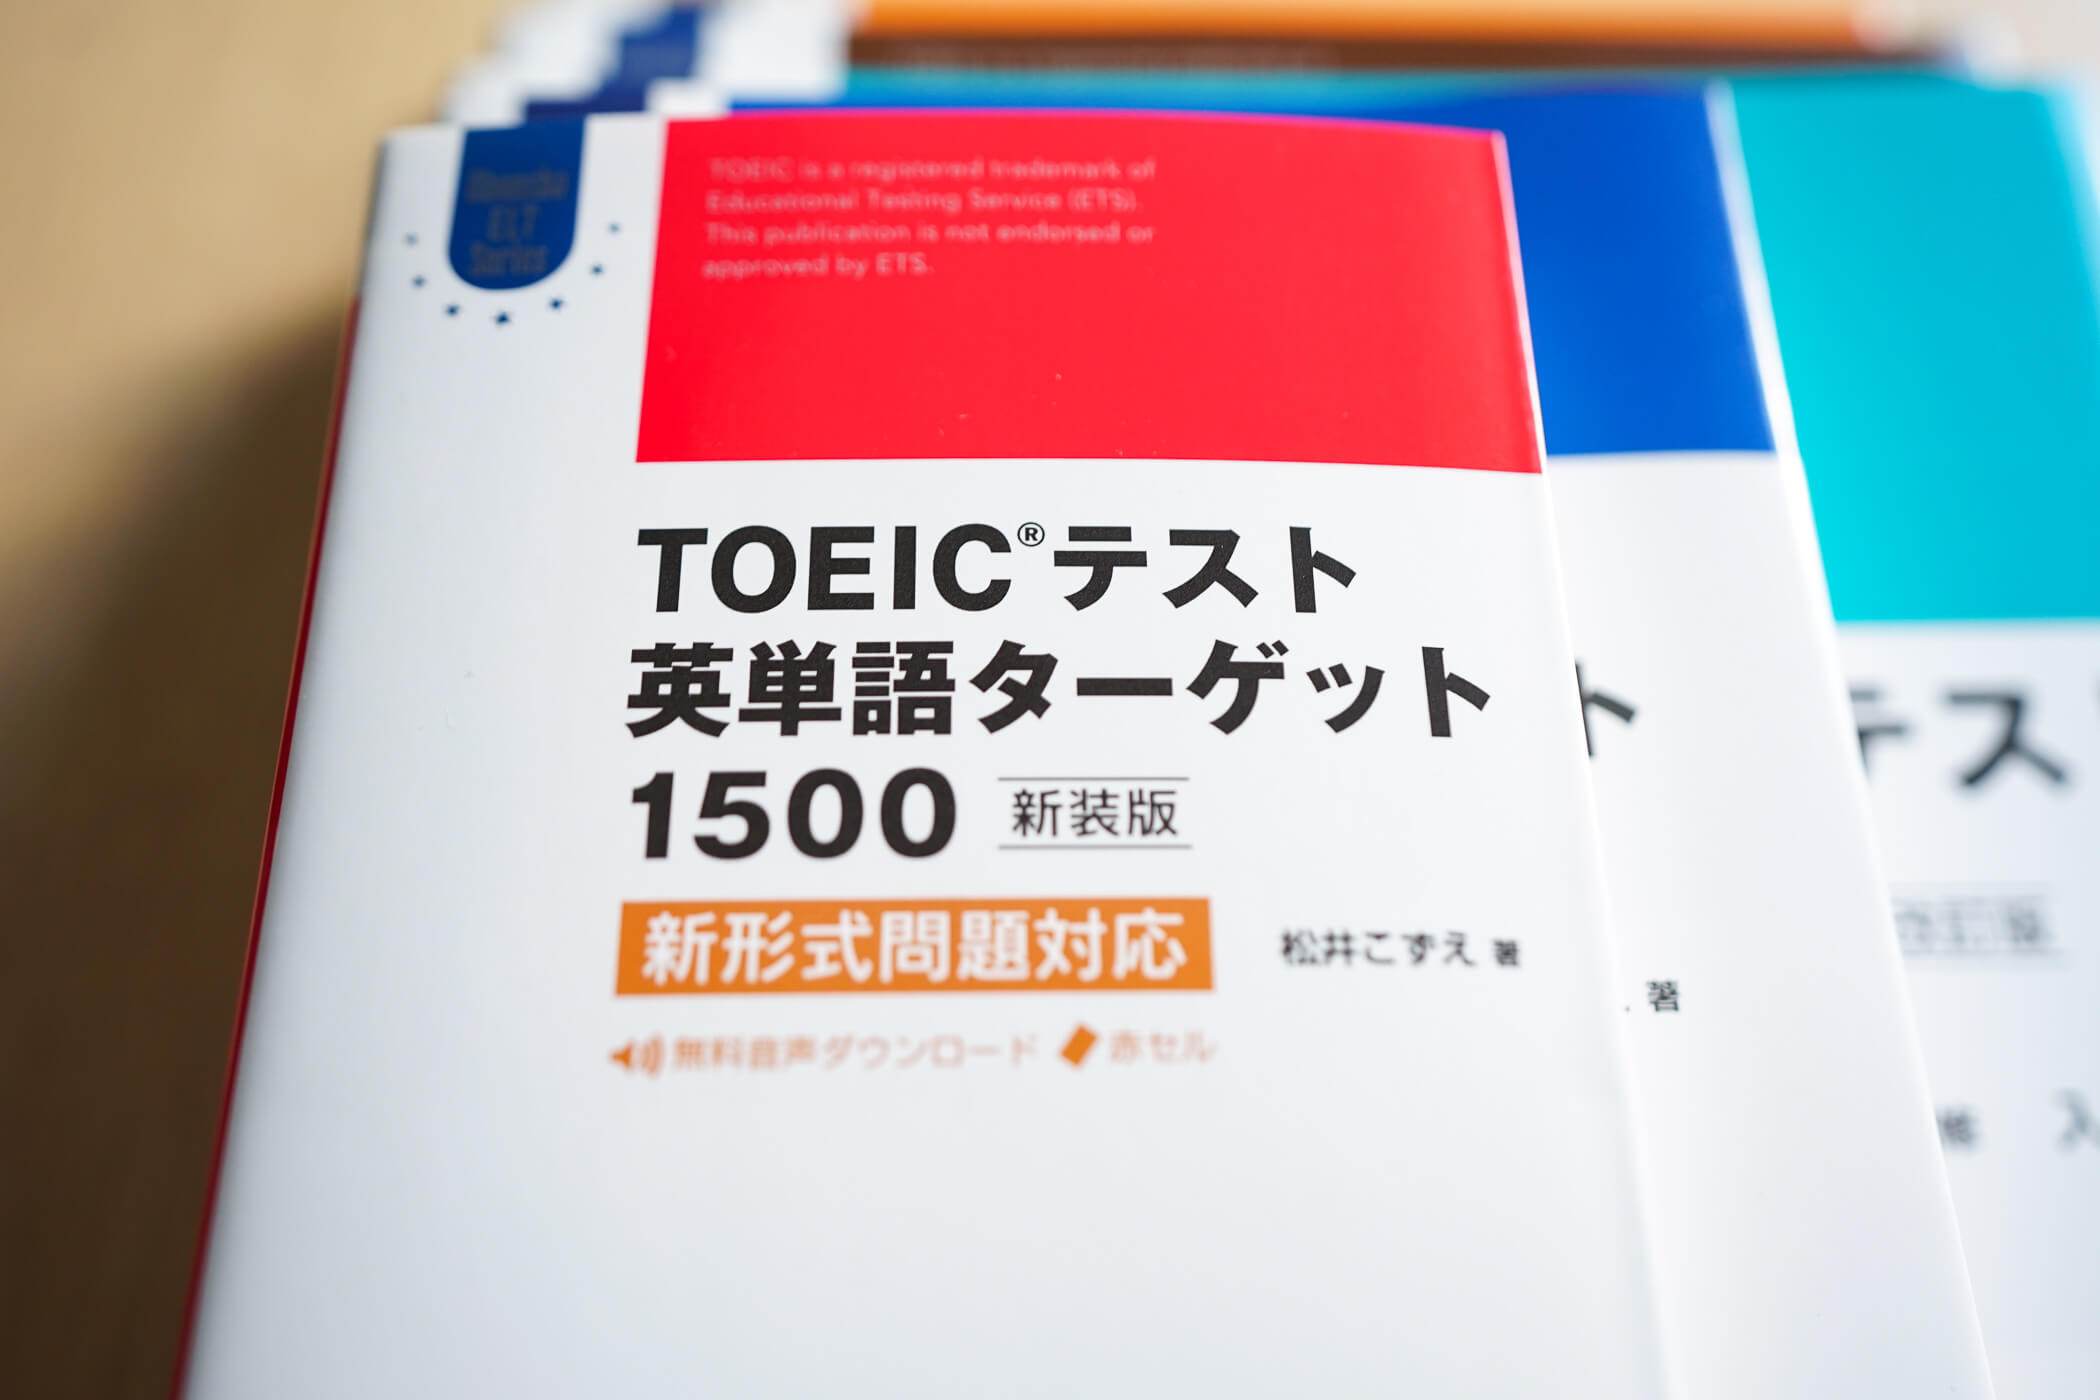 TOEIC L&Rテストとは：概要と勉強法・試験対策 | 旺文社 英語の友